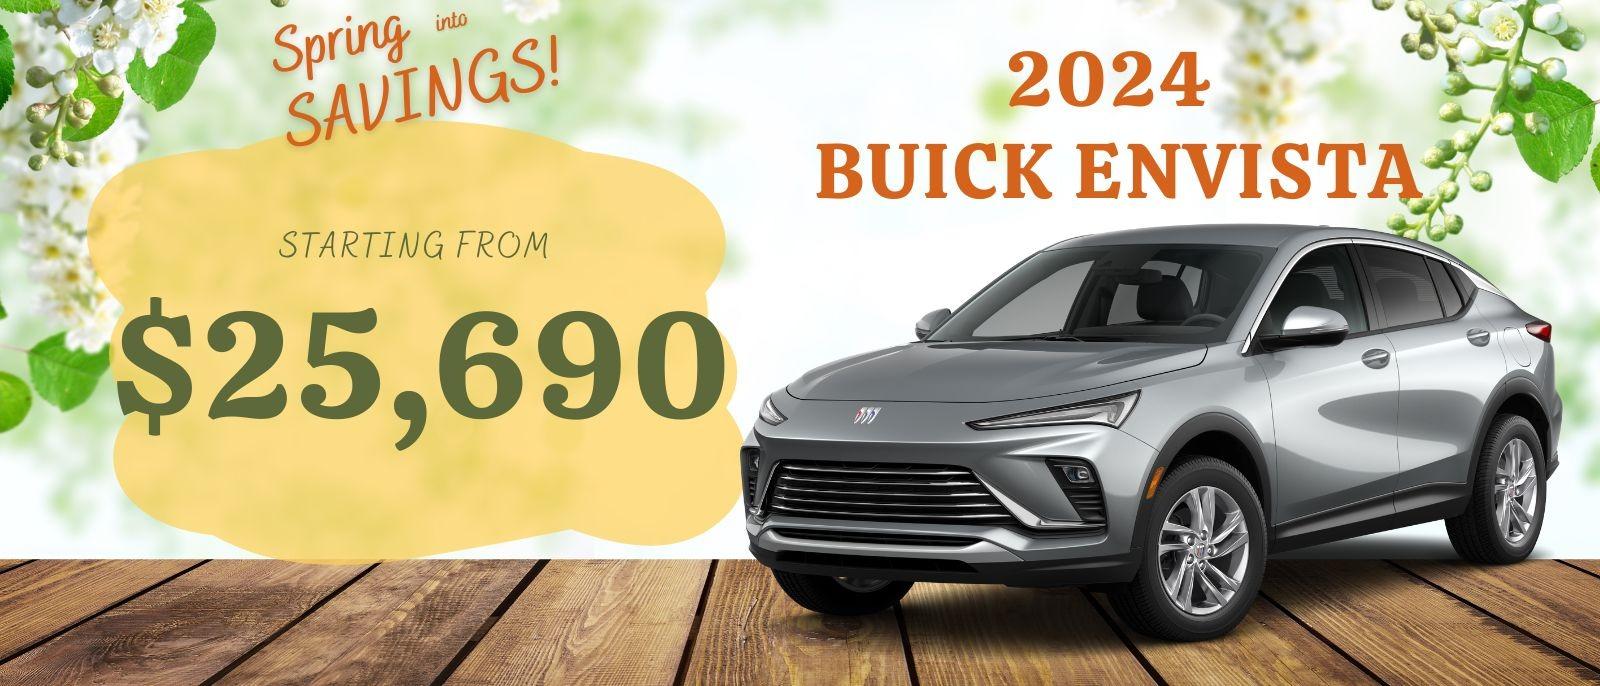 Buick Envista Deals